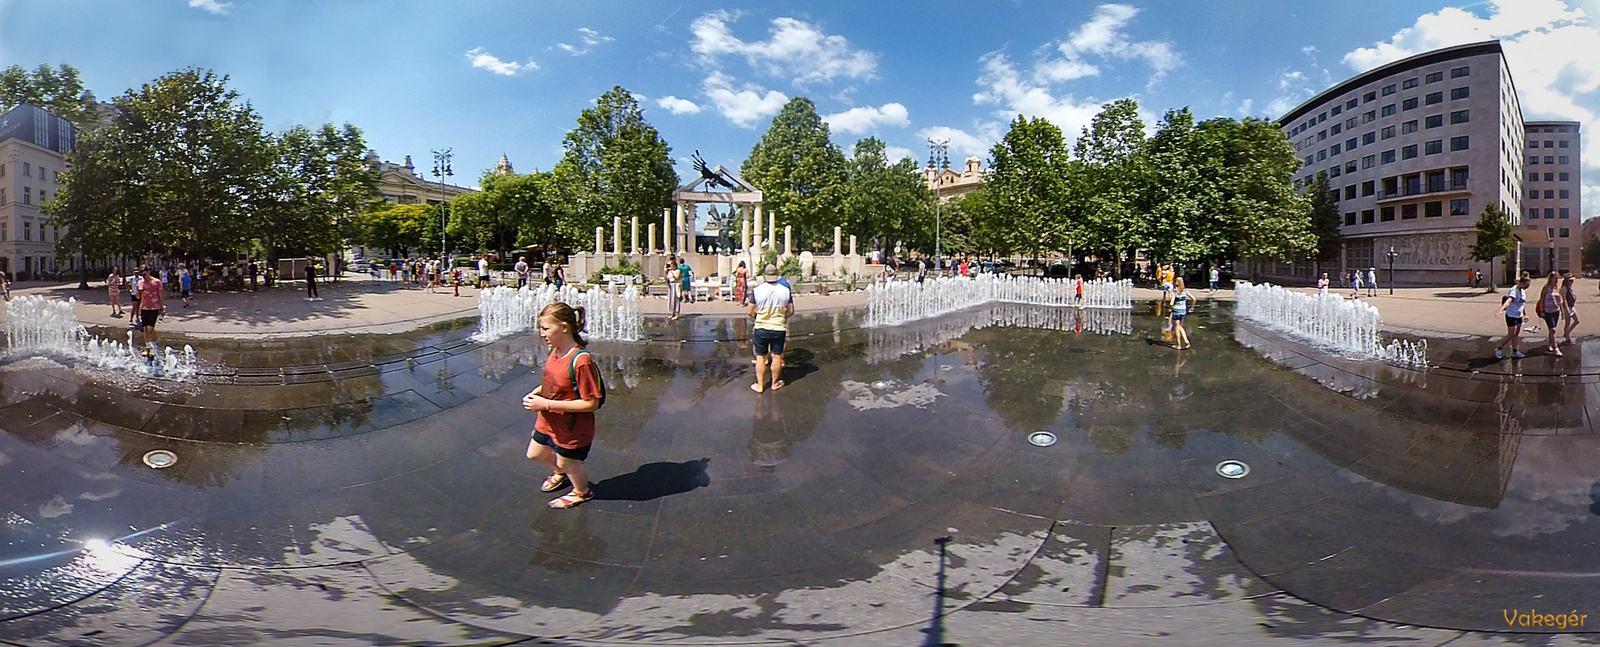 Budapest - Szabadság tér - Interaktív szökőkút